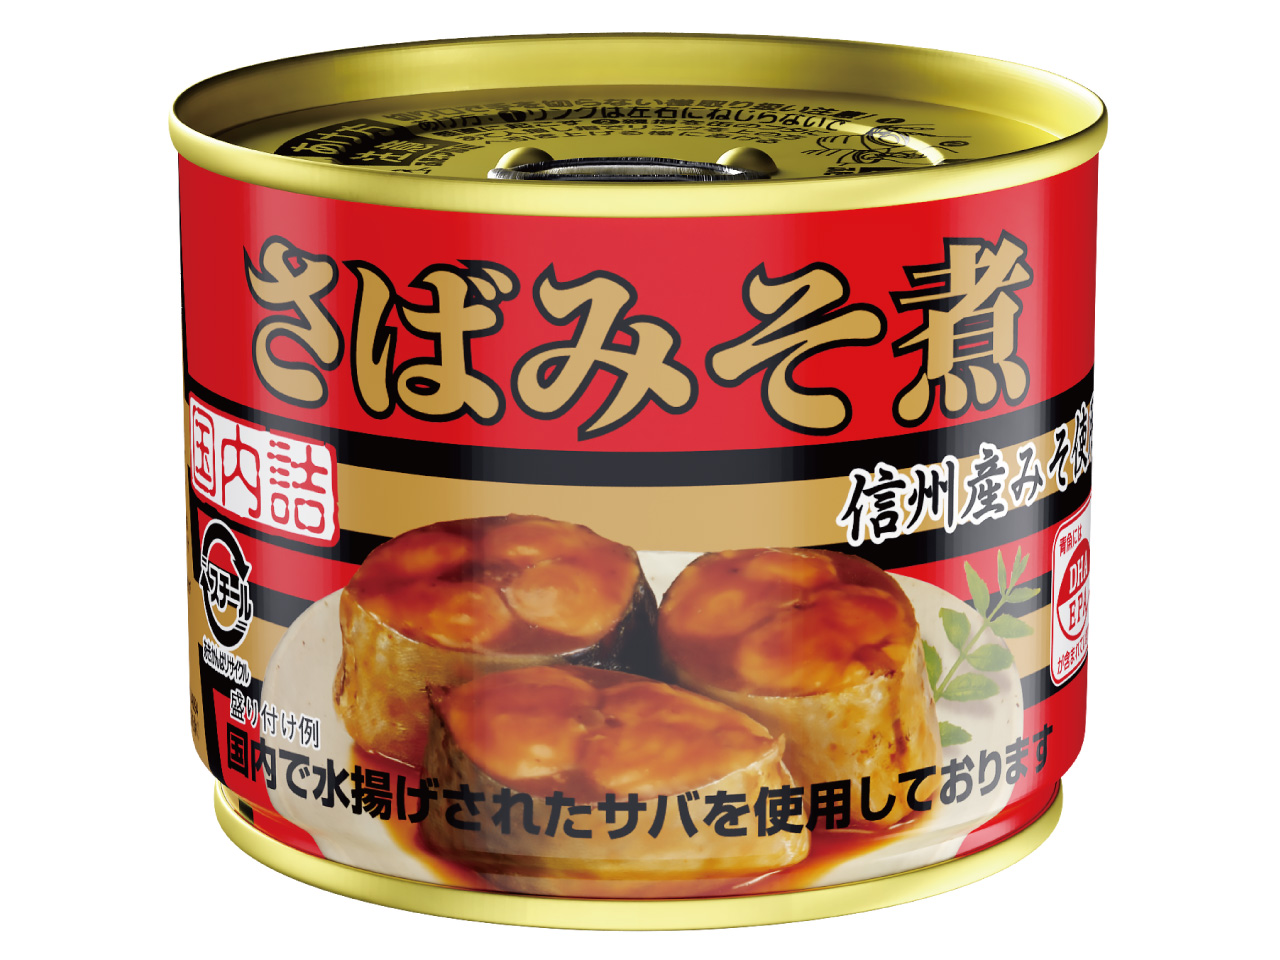 さば味噌煮 EO6 【12缶セット】